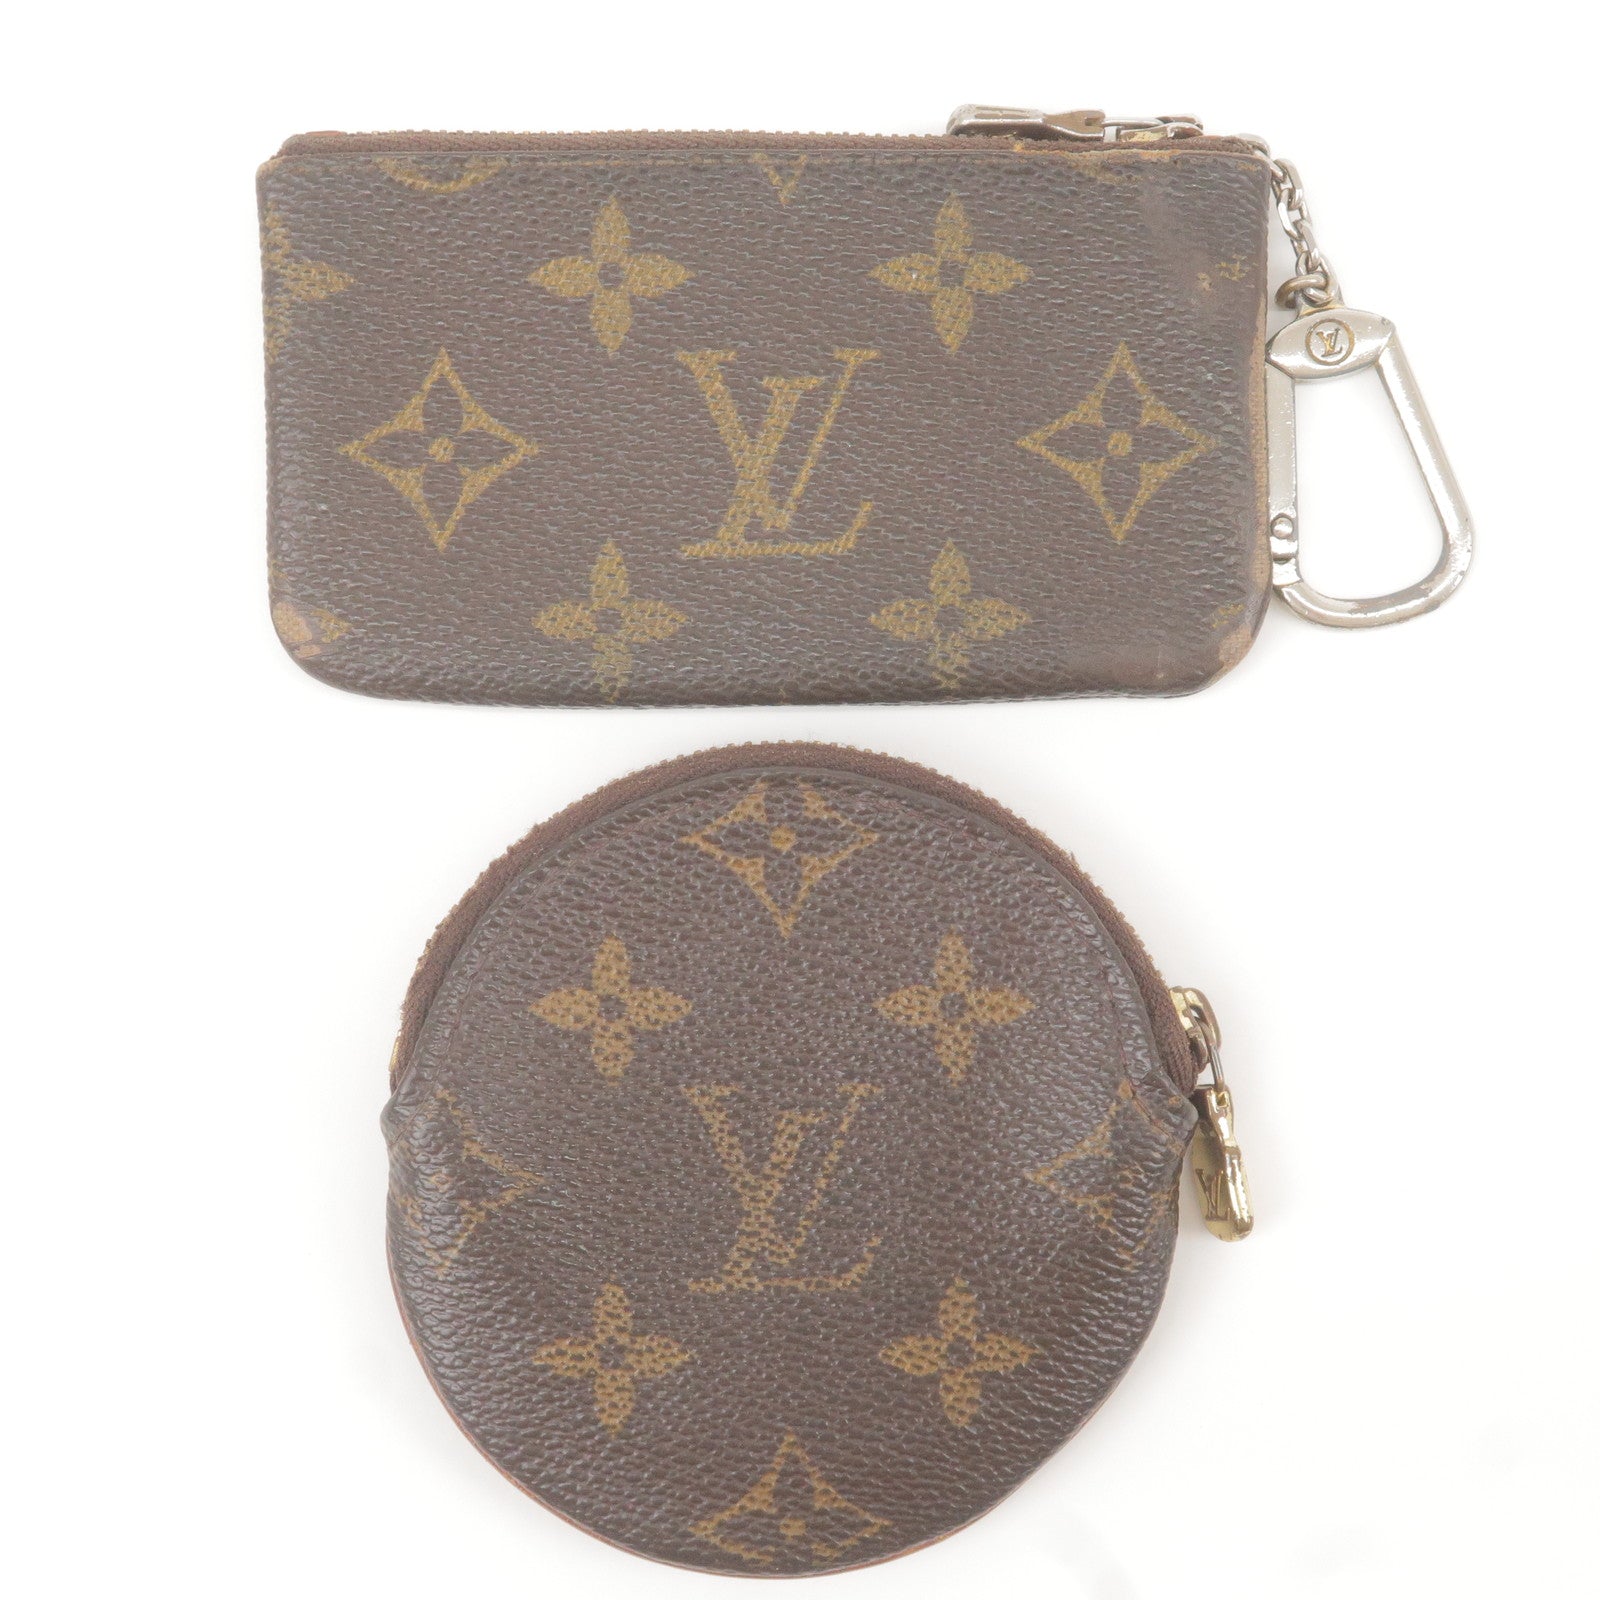 Vintage Louis Vuitton Sac Bandouliere Handbag Review